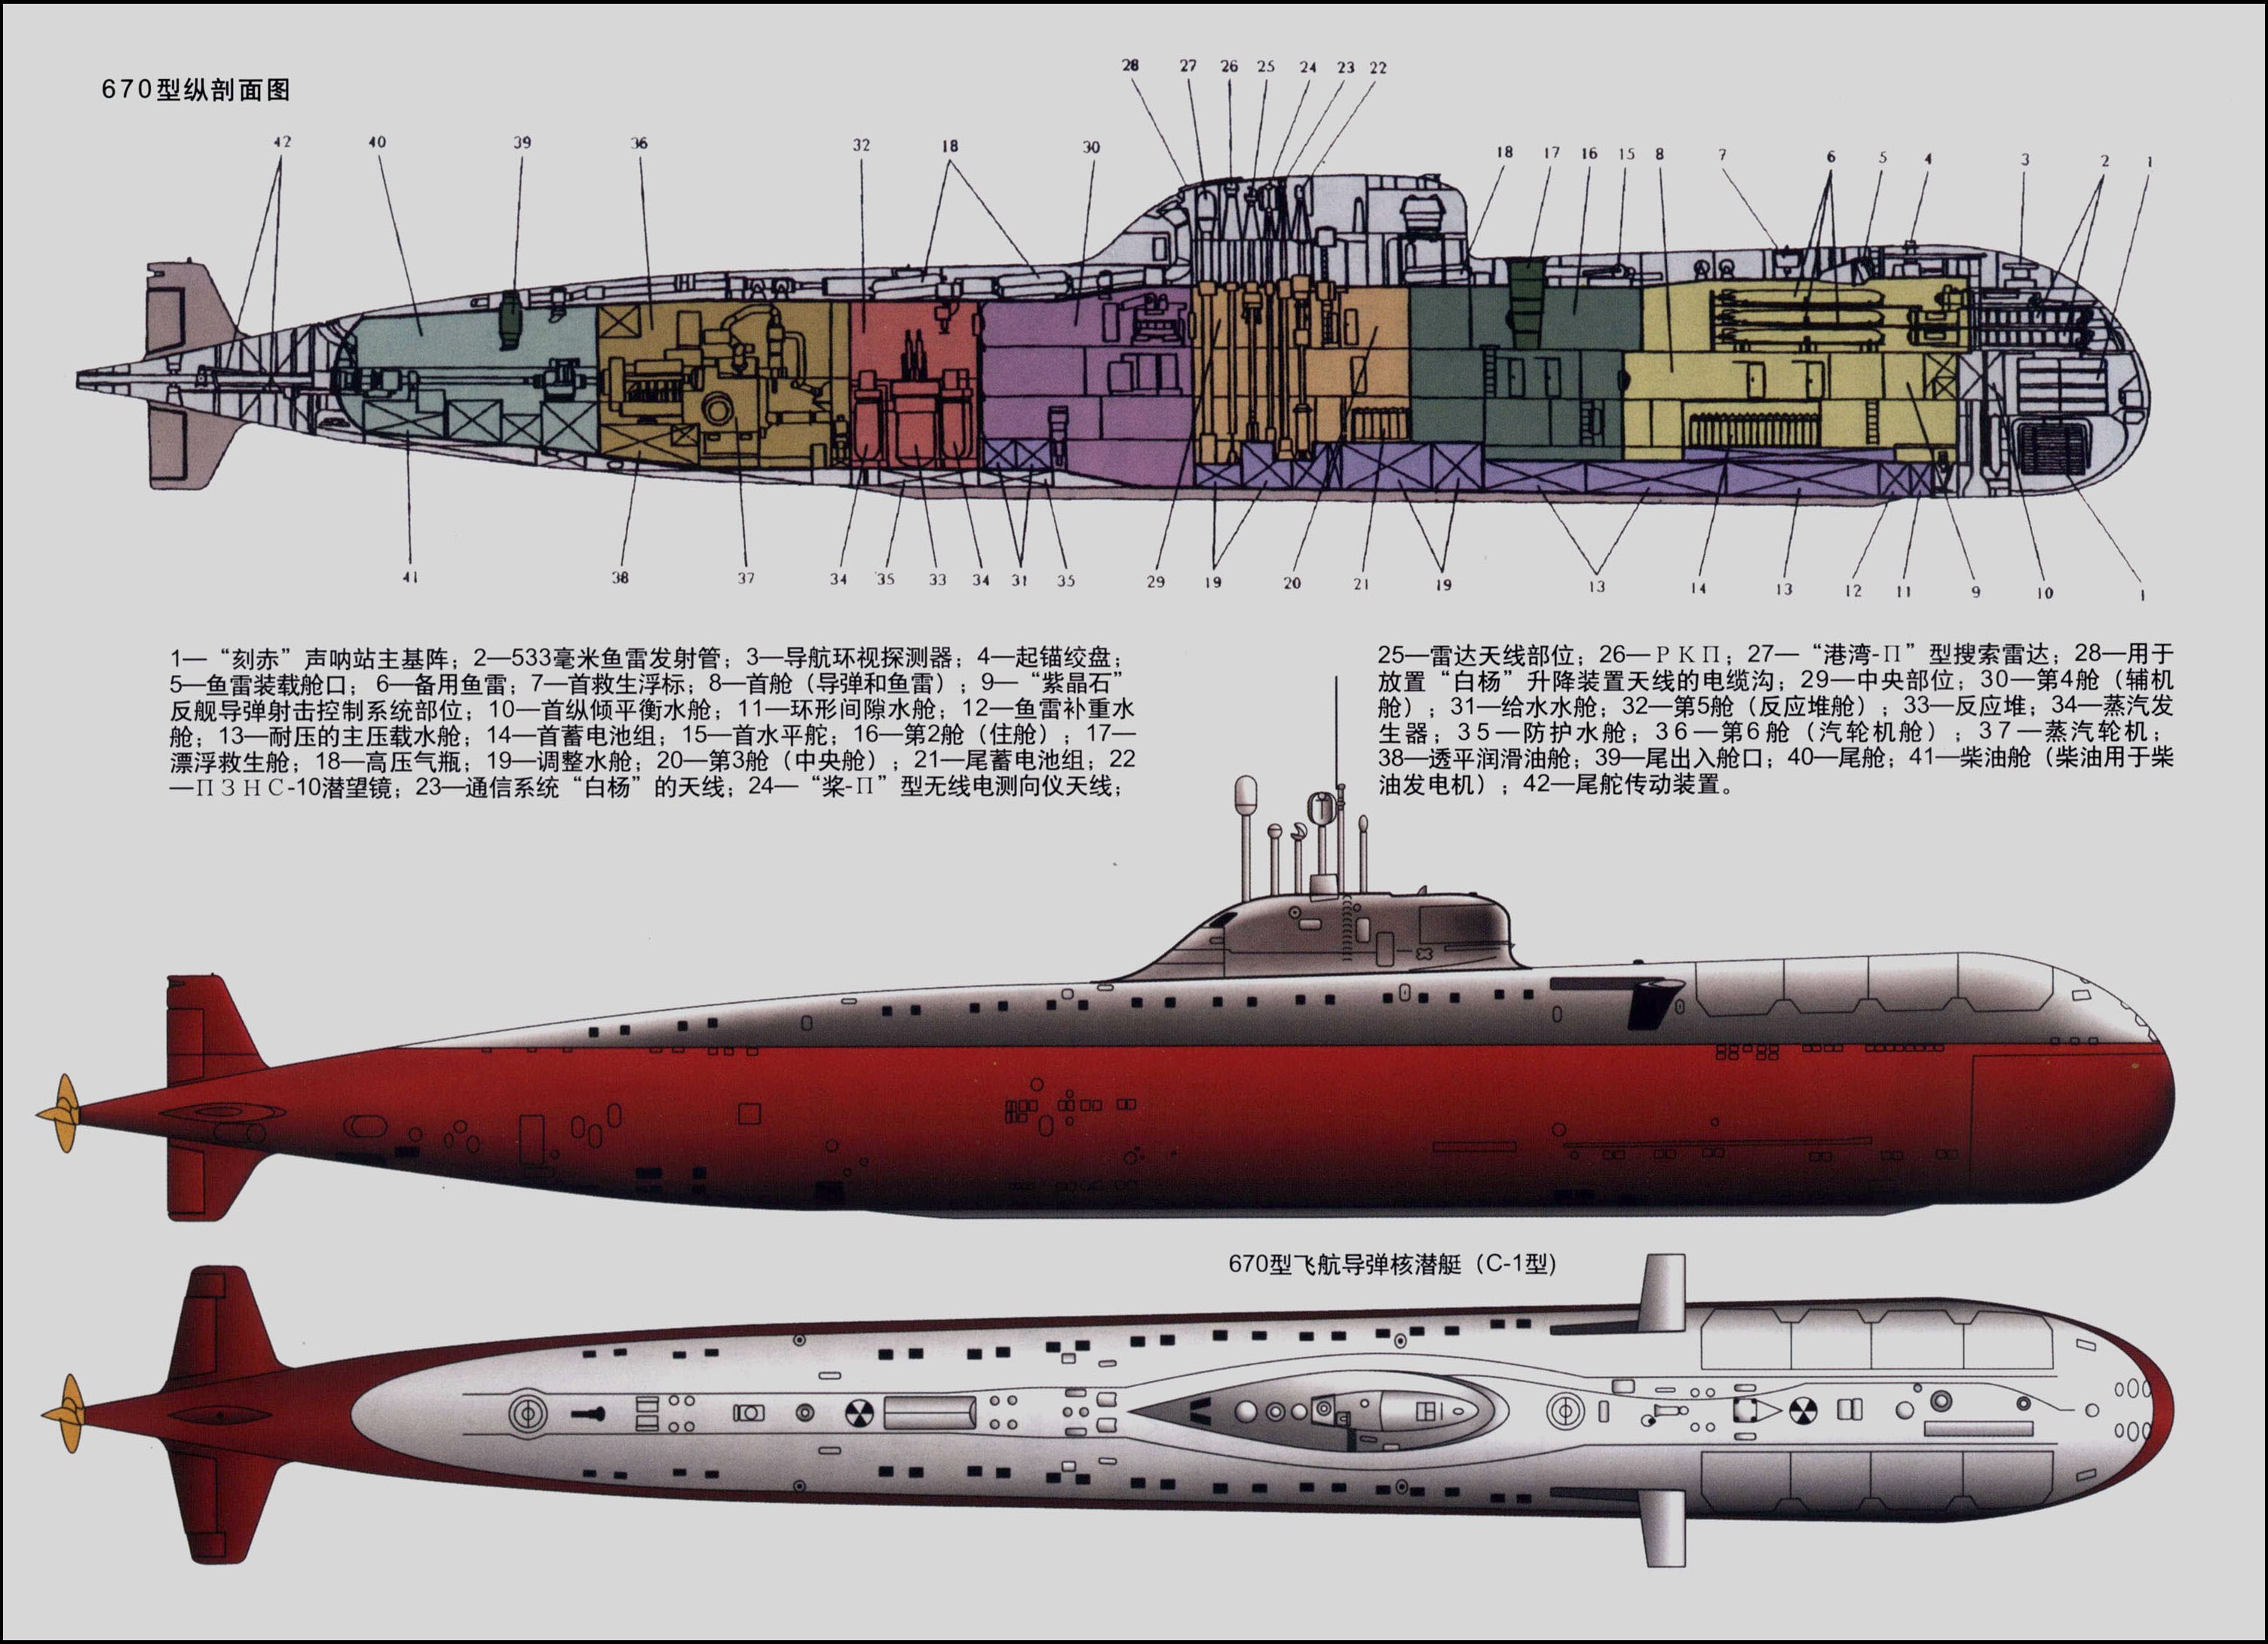 670型巡航飛彈核潛艇結構圖